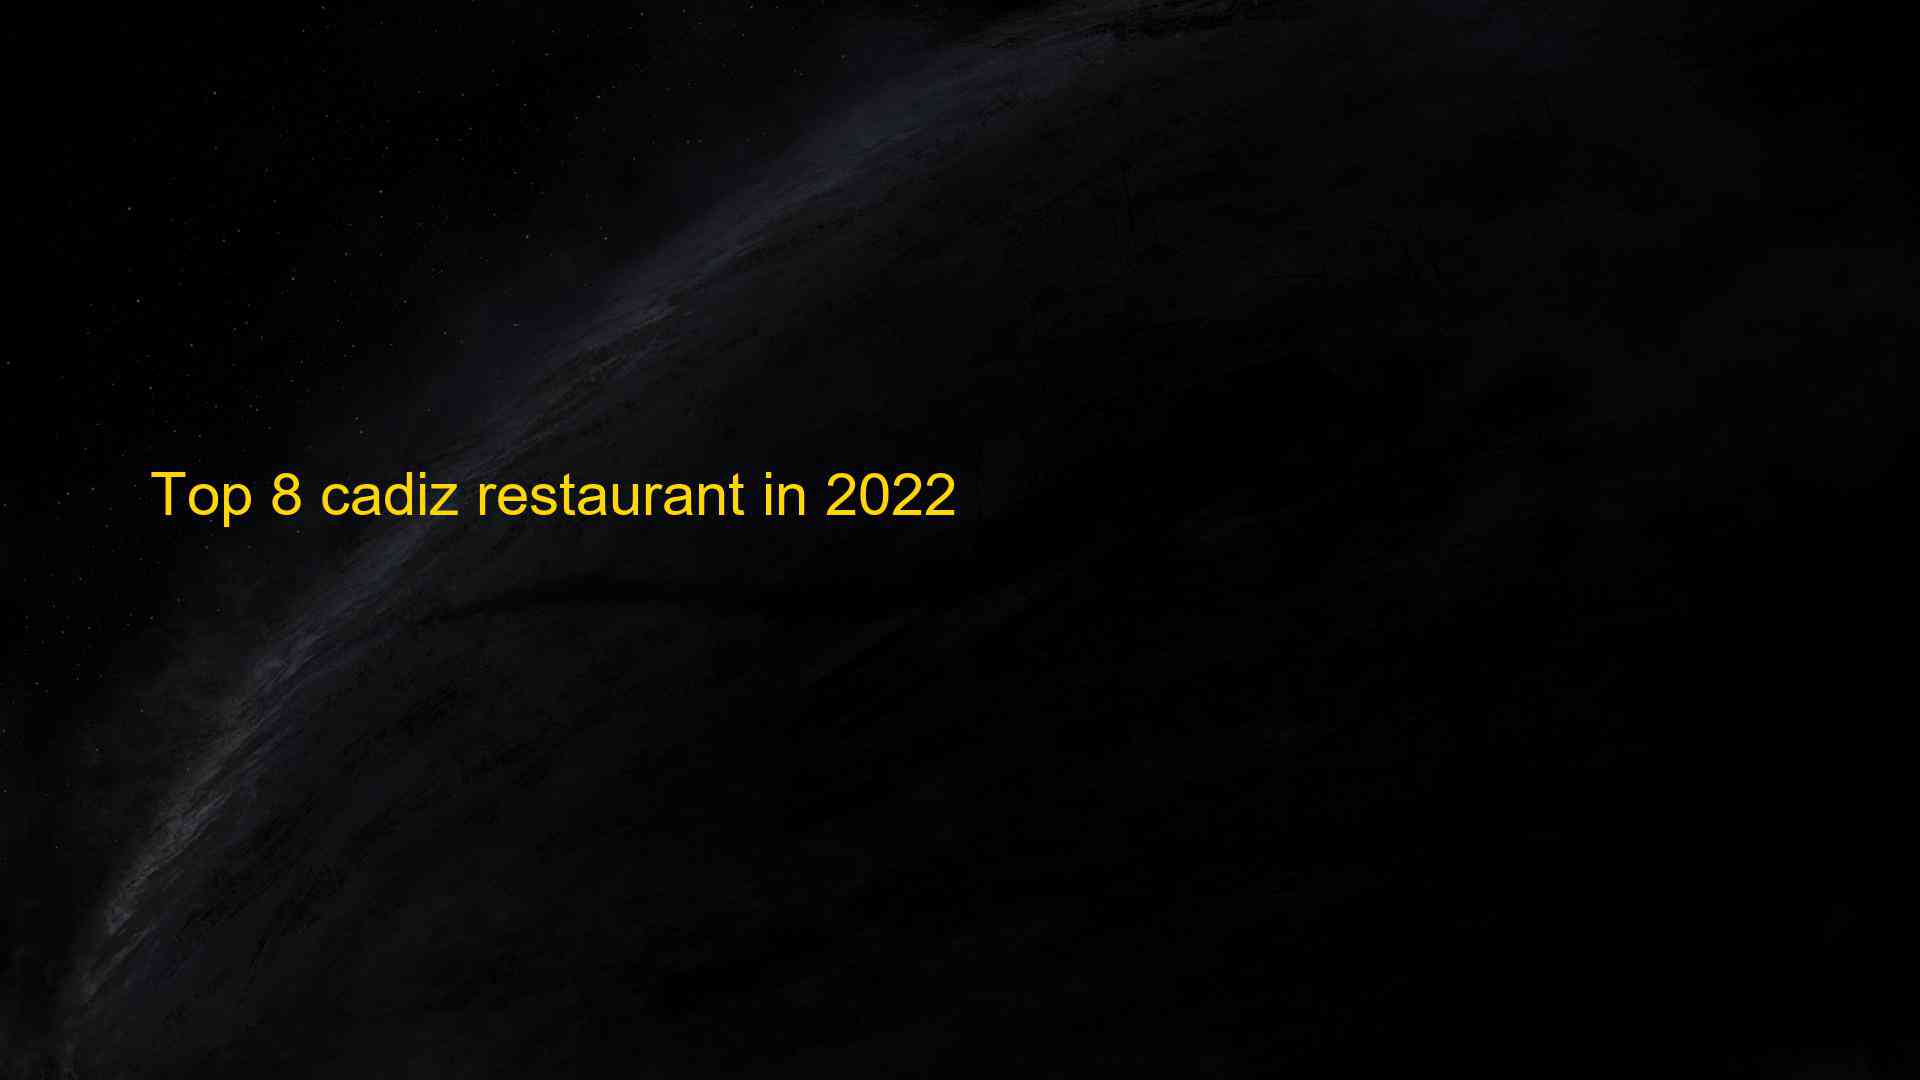 Top 8 cadiz restaurant in 2022 1663538524